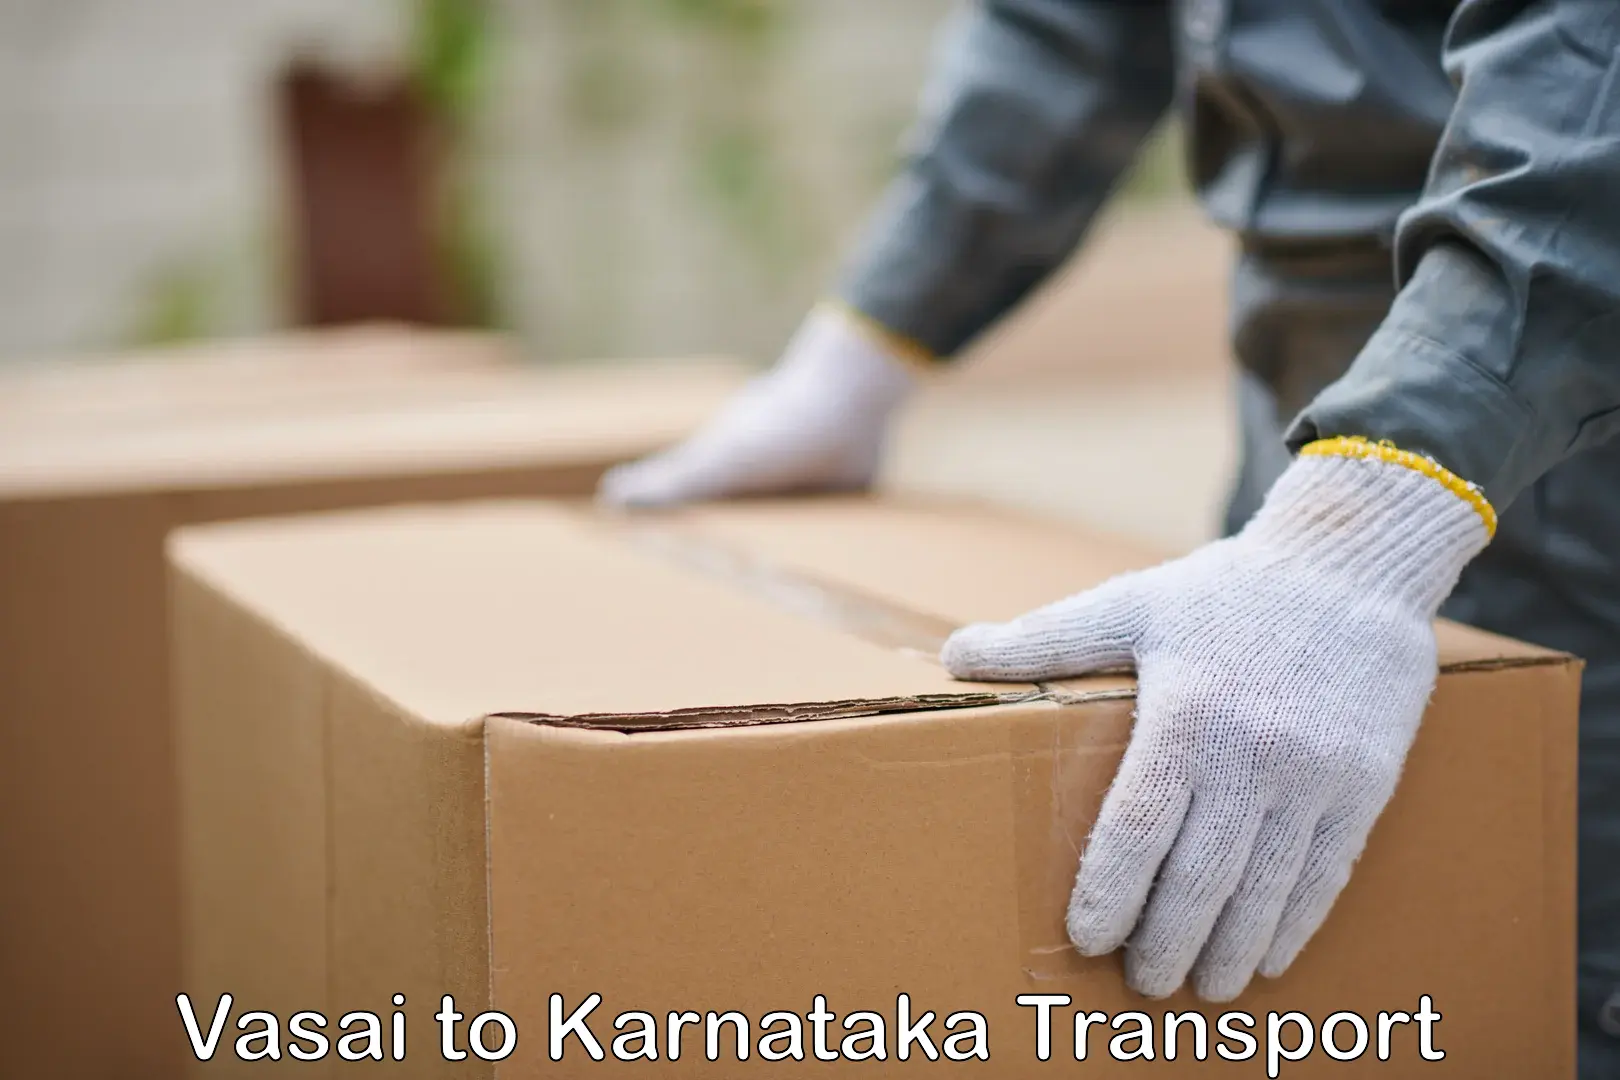 Parcel transport services Vasai to Mangalore